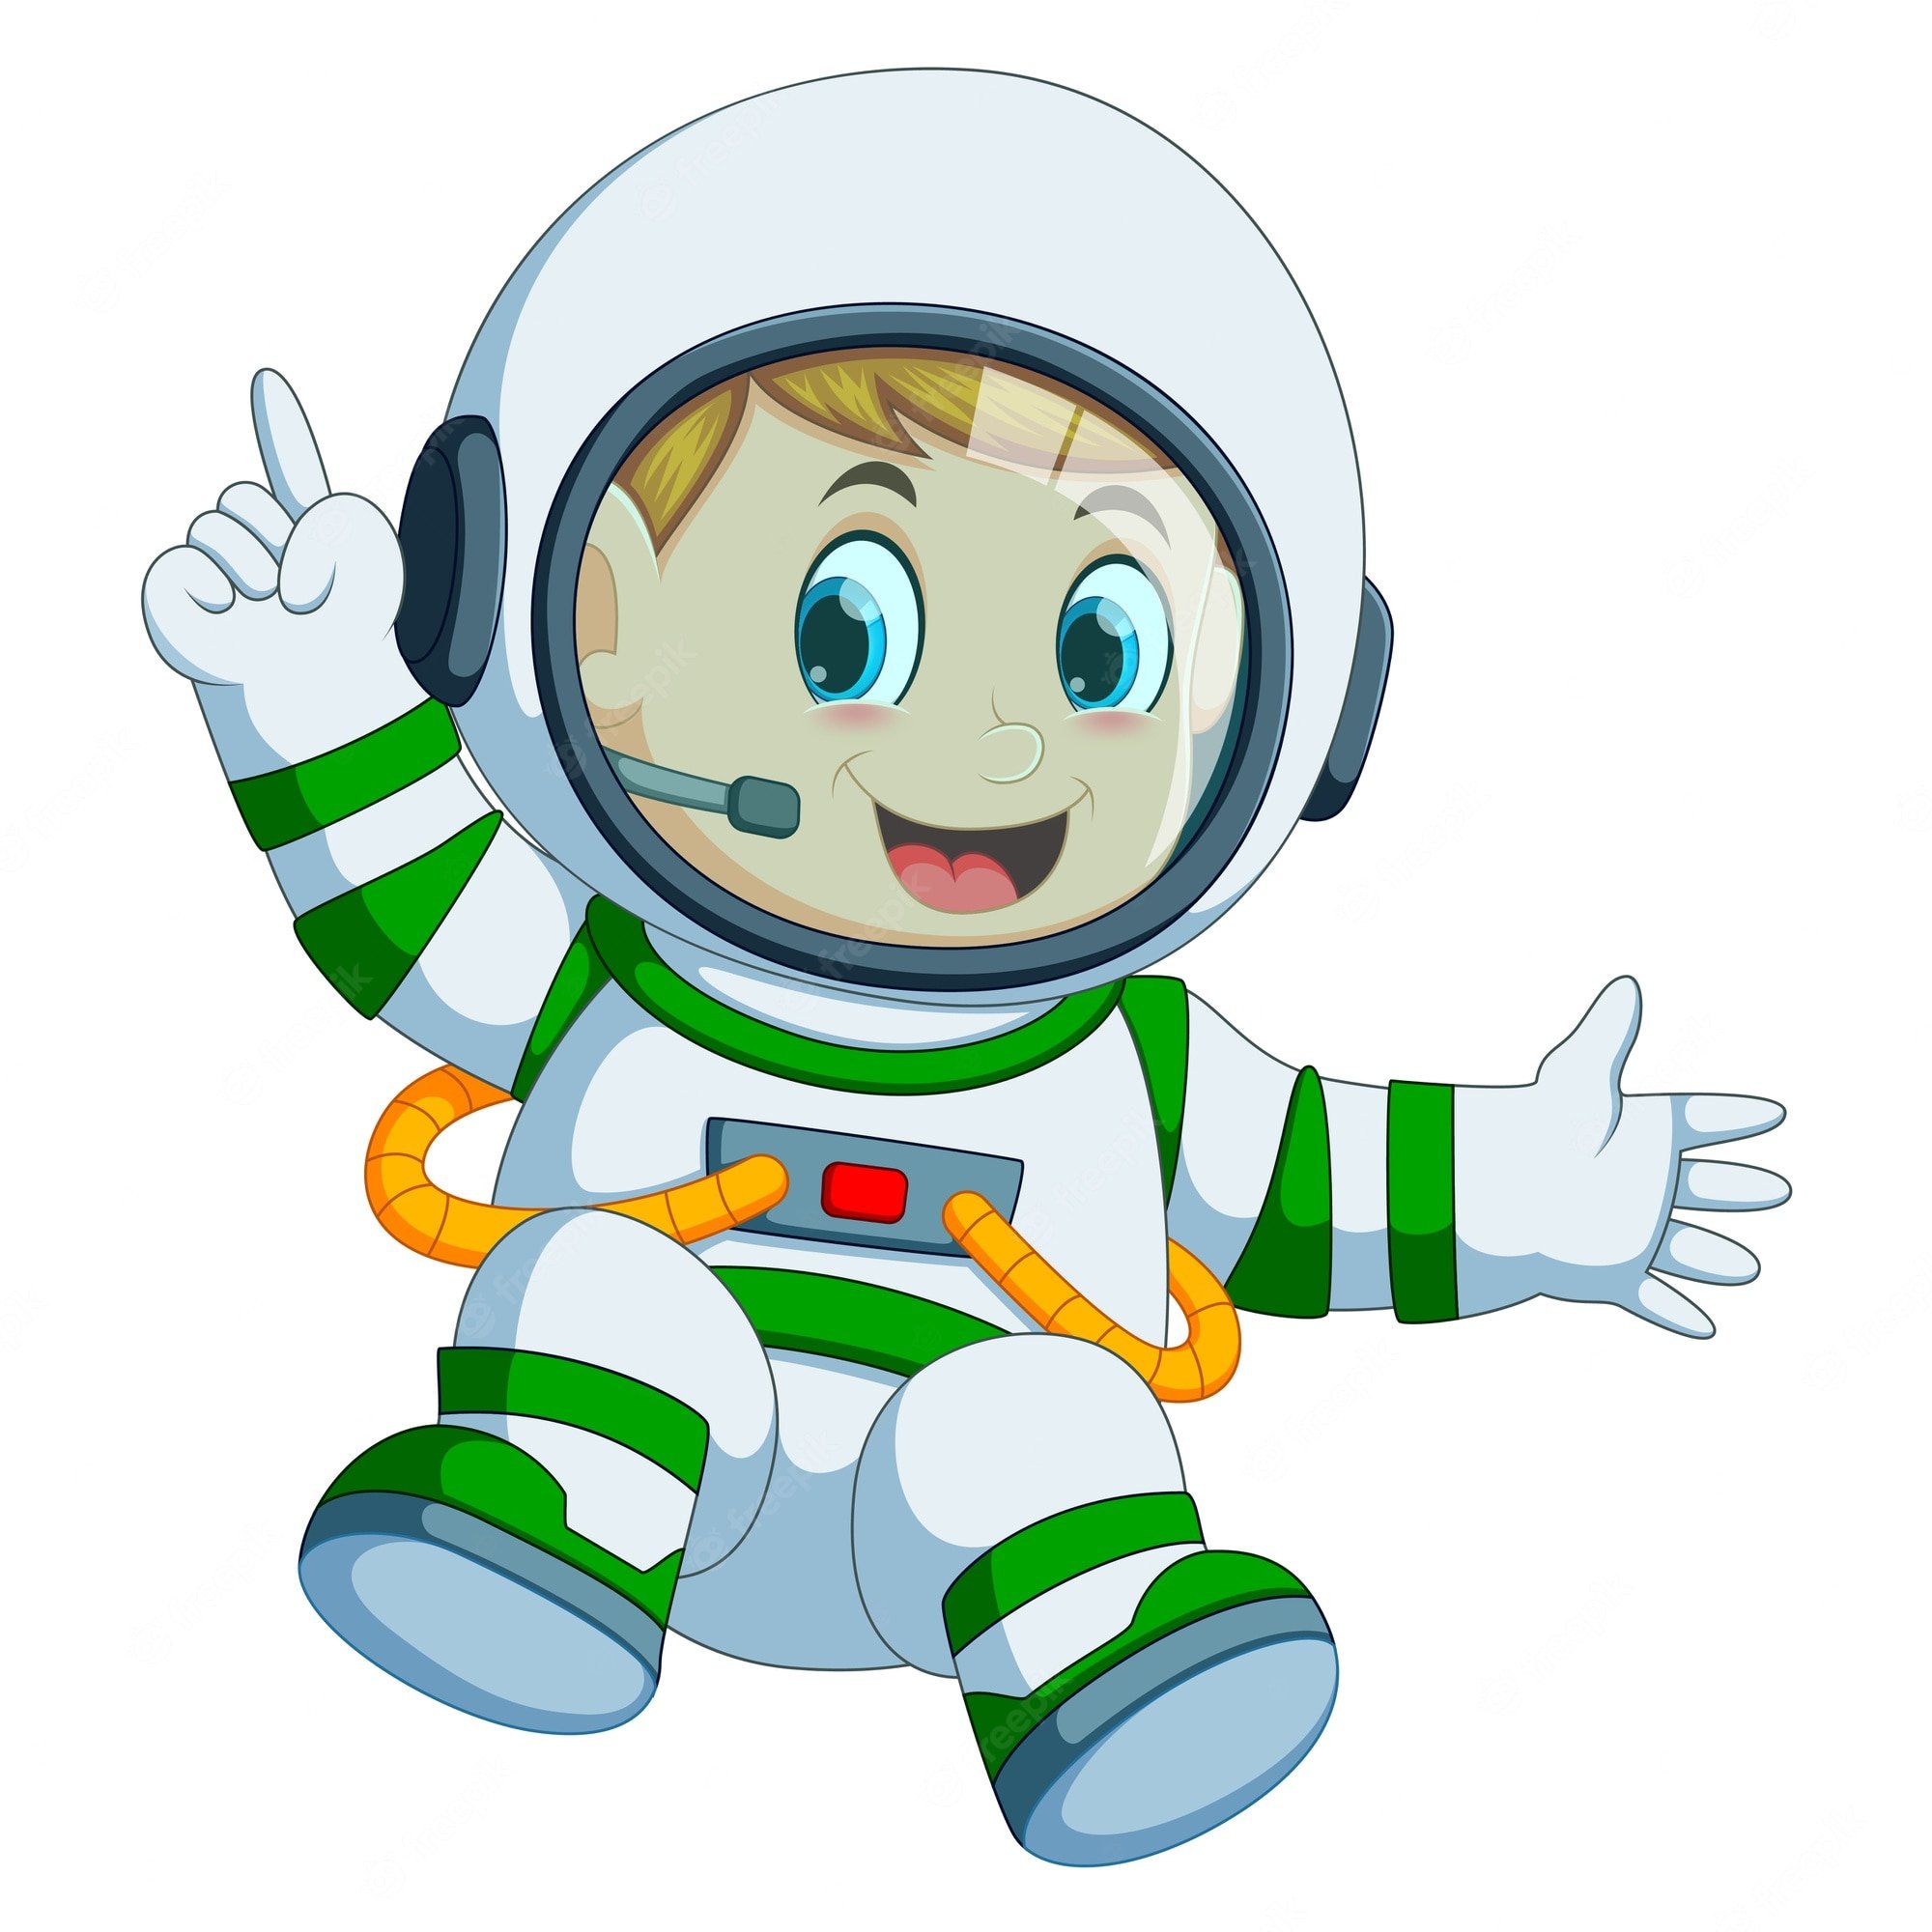 Космонавт картинки для детей дошкольного возраста. Космонавт на прозрачном фоне. Космонавт на белом фоне. Космонавт мультяшный. Космонавт для детей.